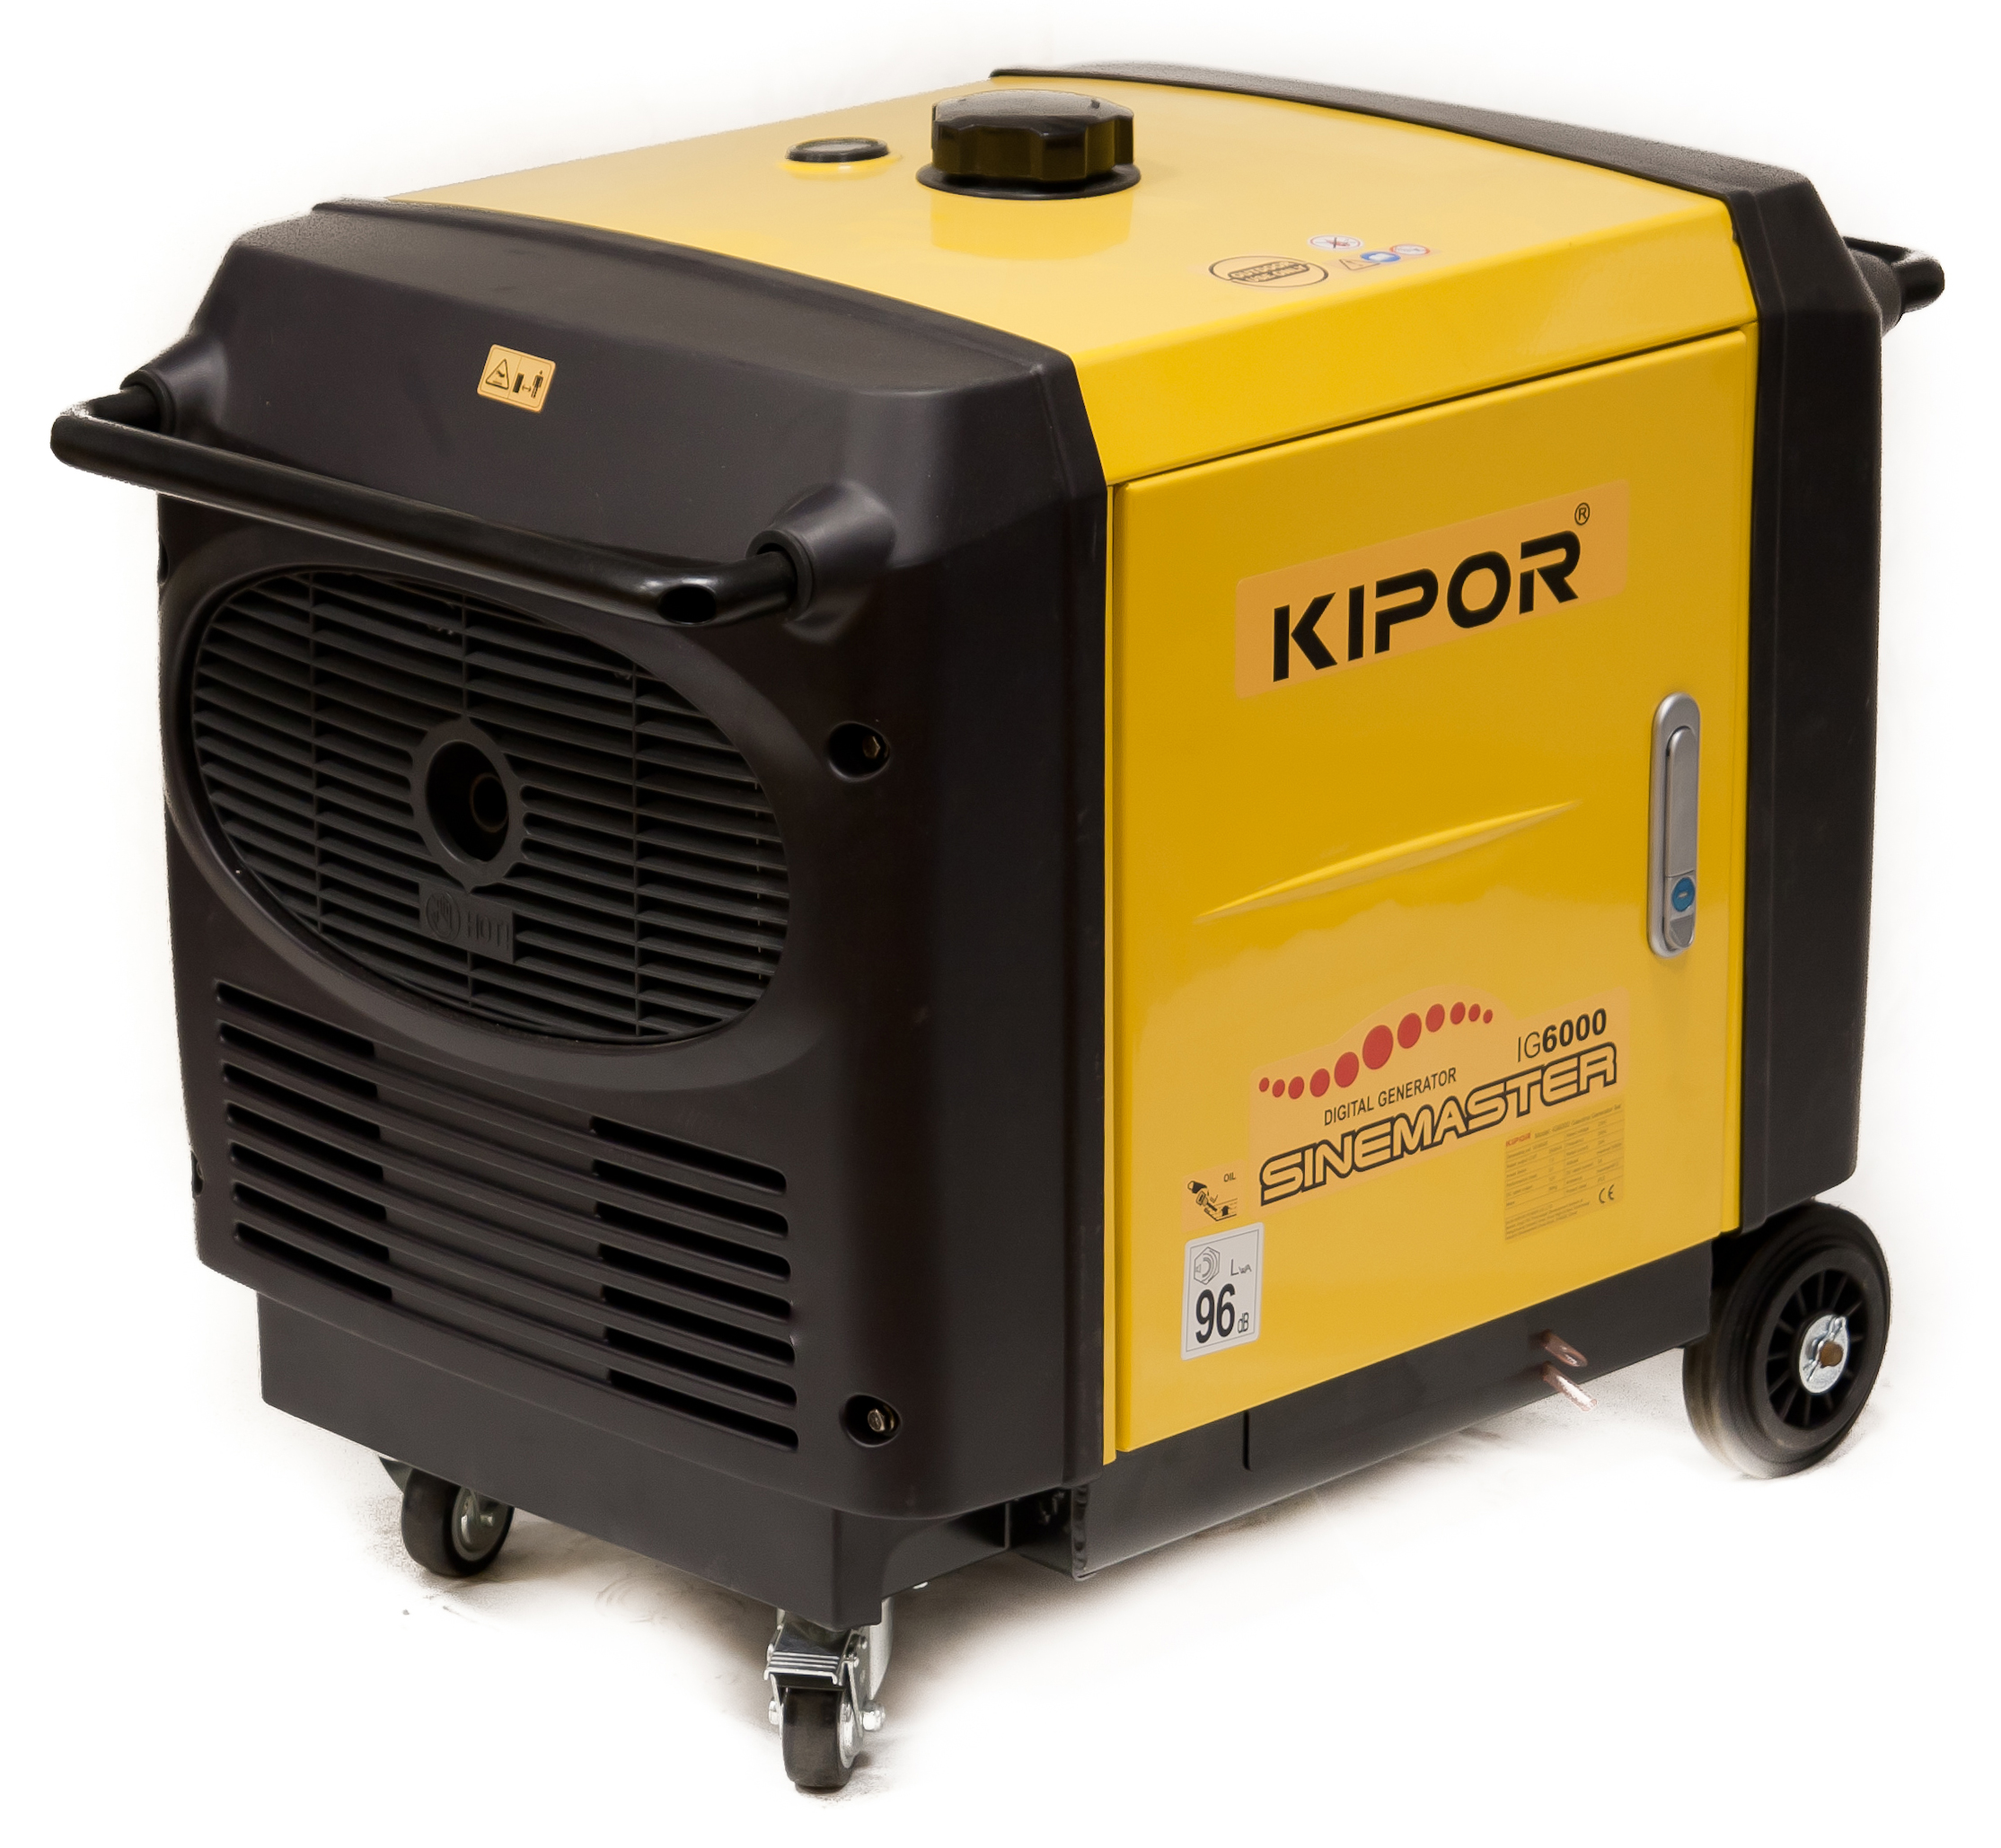  инверторный Kipor IG6000 (6,0 кВт; 220В) с .